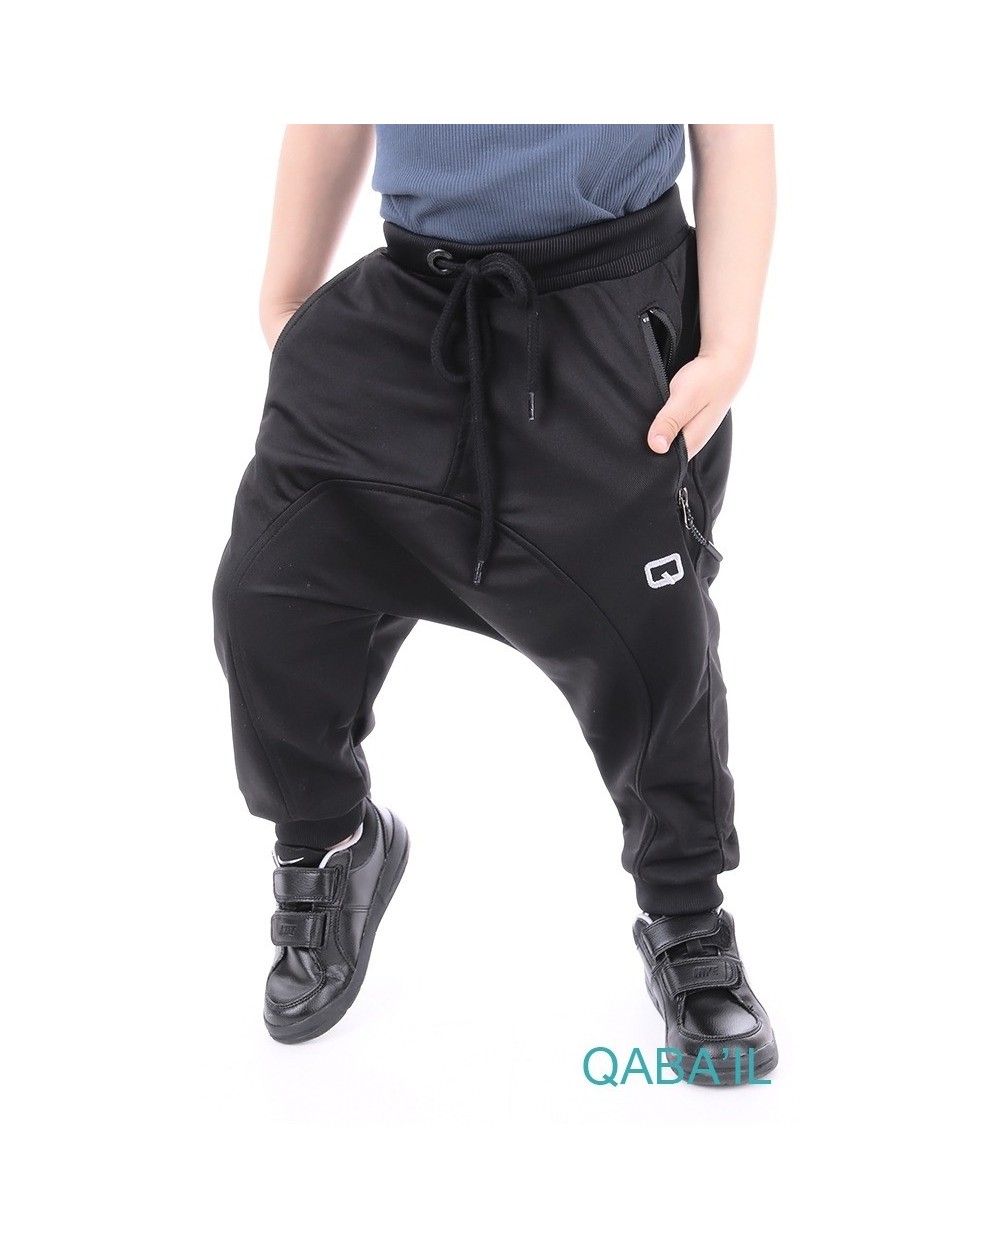 Kid's lightweight jogging harem pants Qaba'il 2019